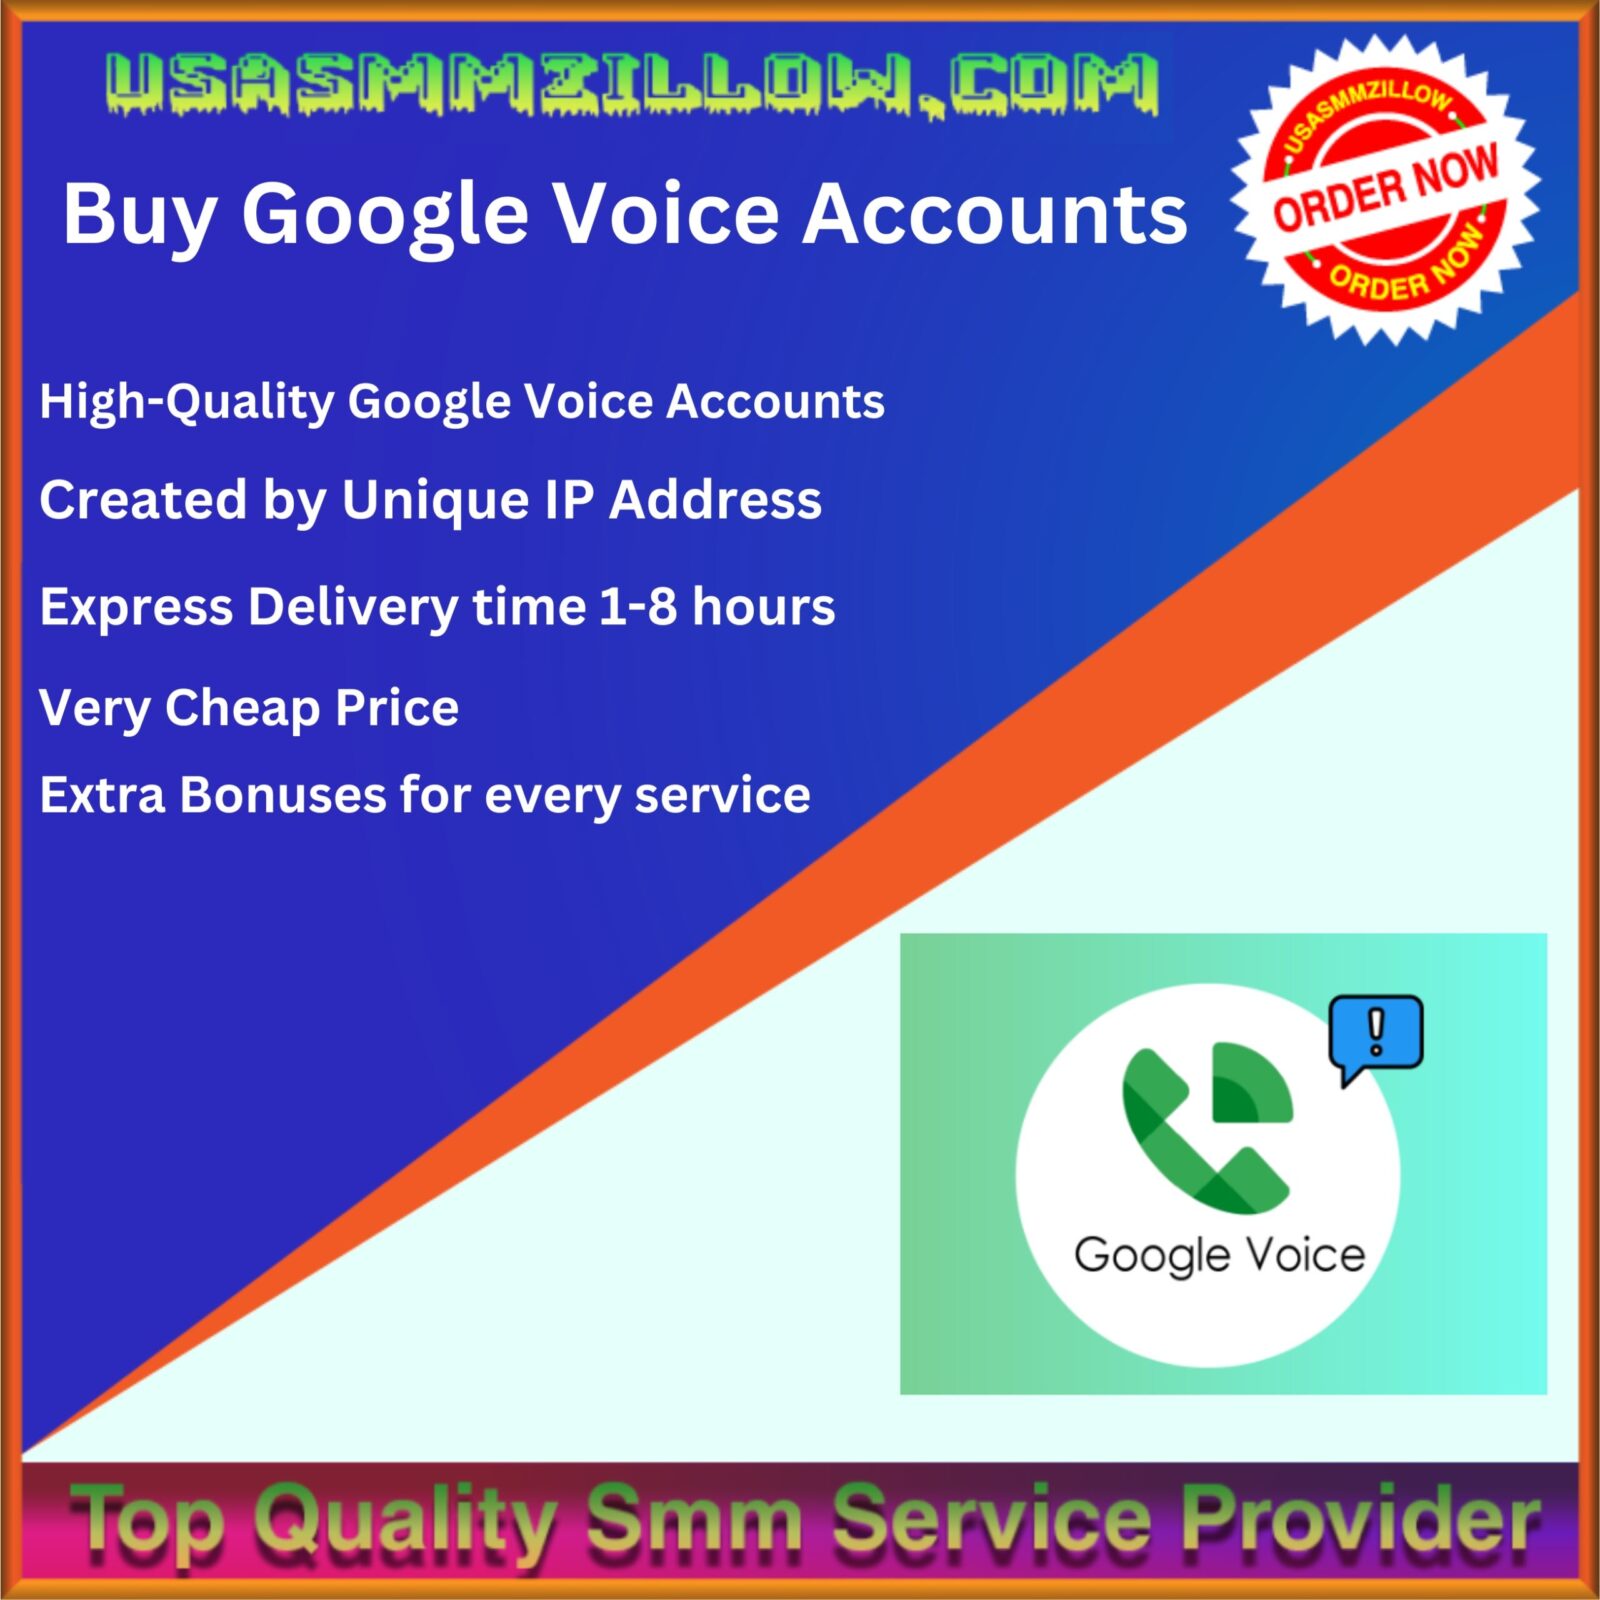 Buy Google Voice Accounts - 100% PVA, Bulk & Aged Gurantee